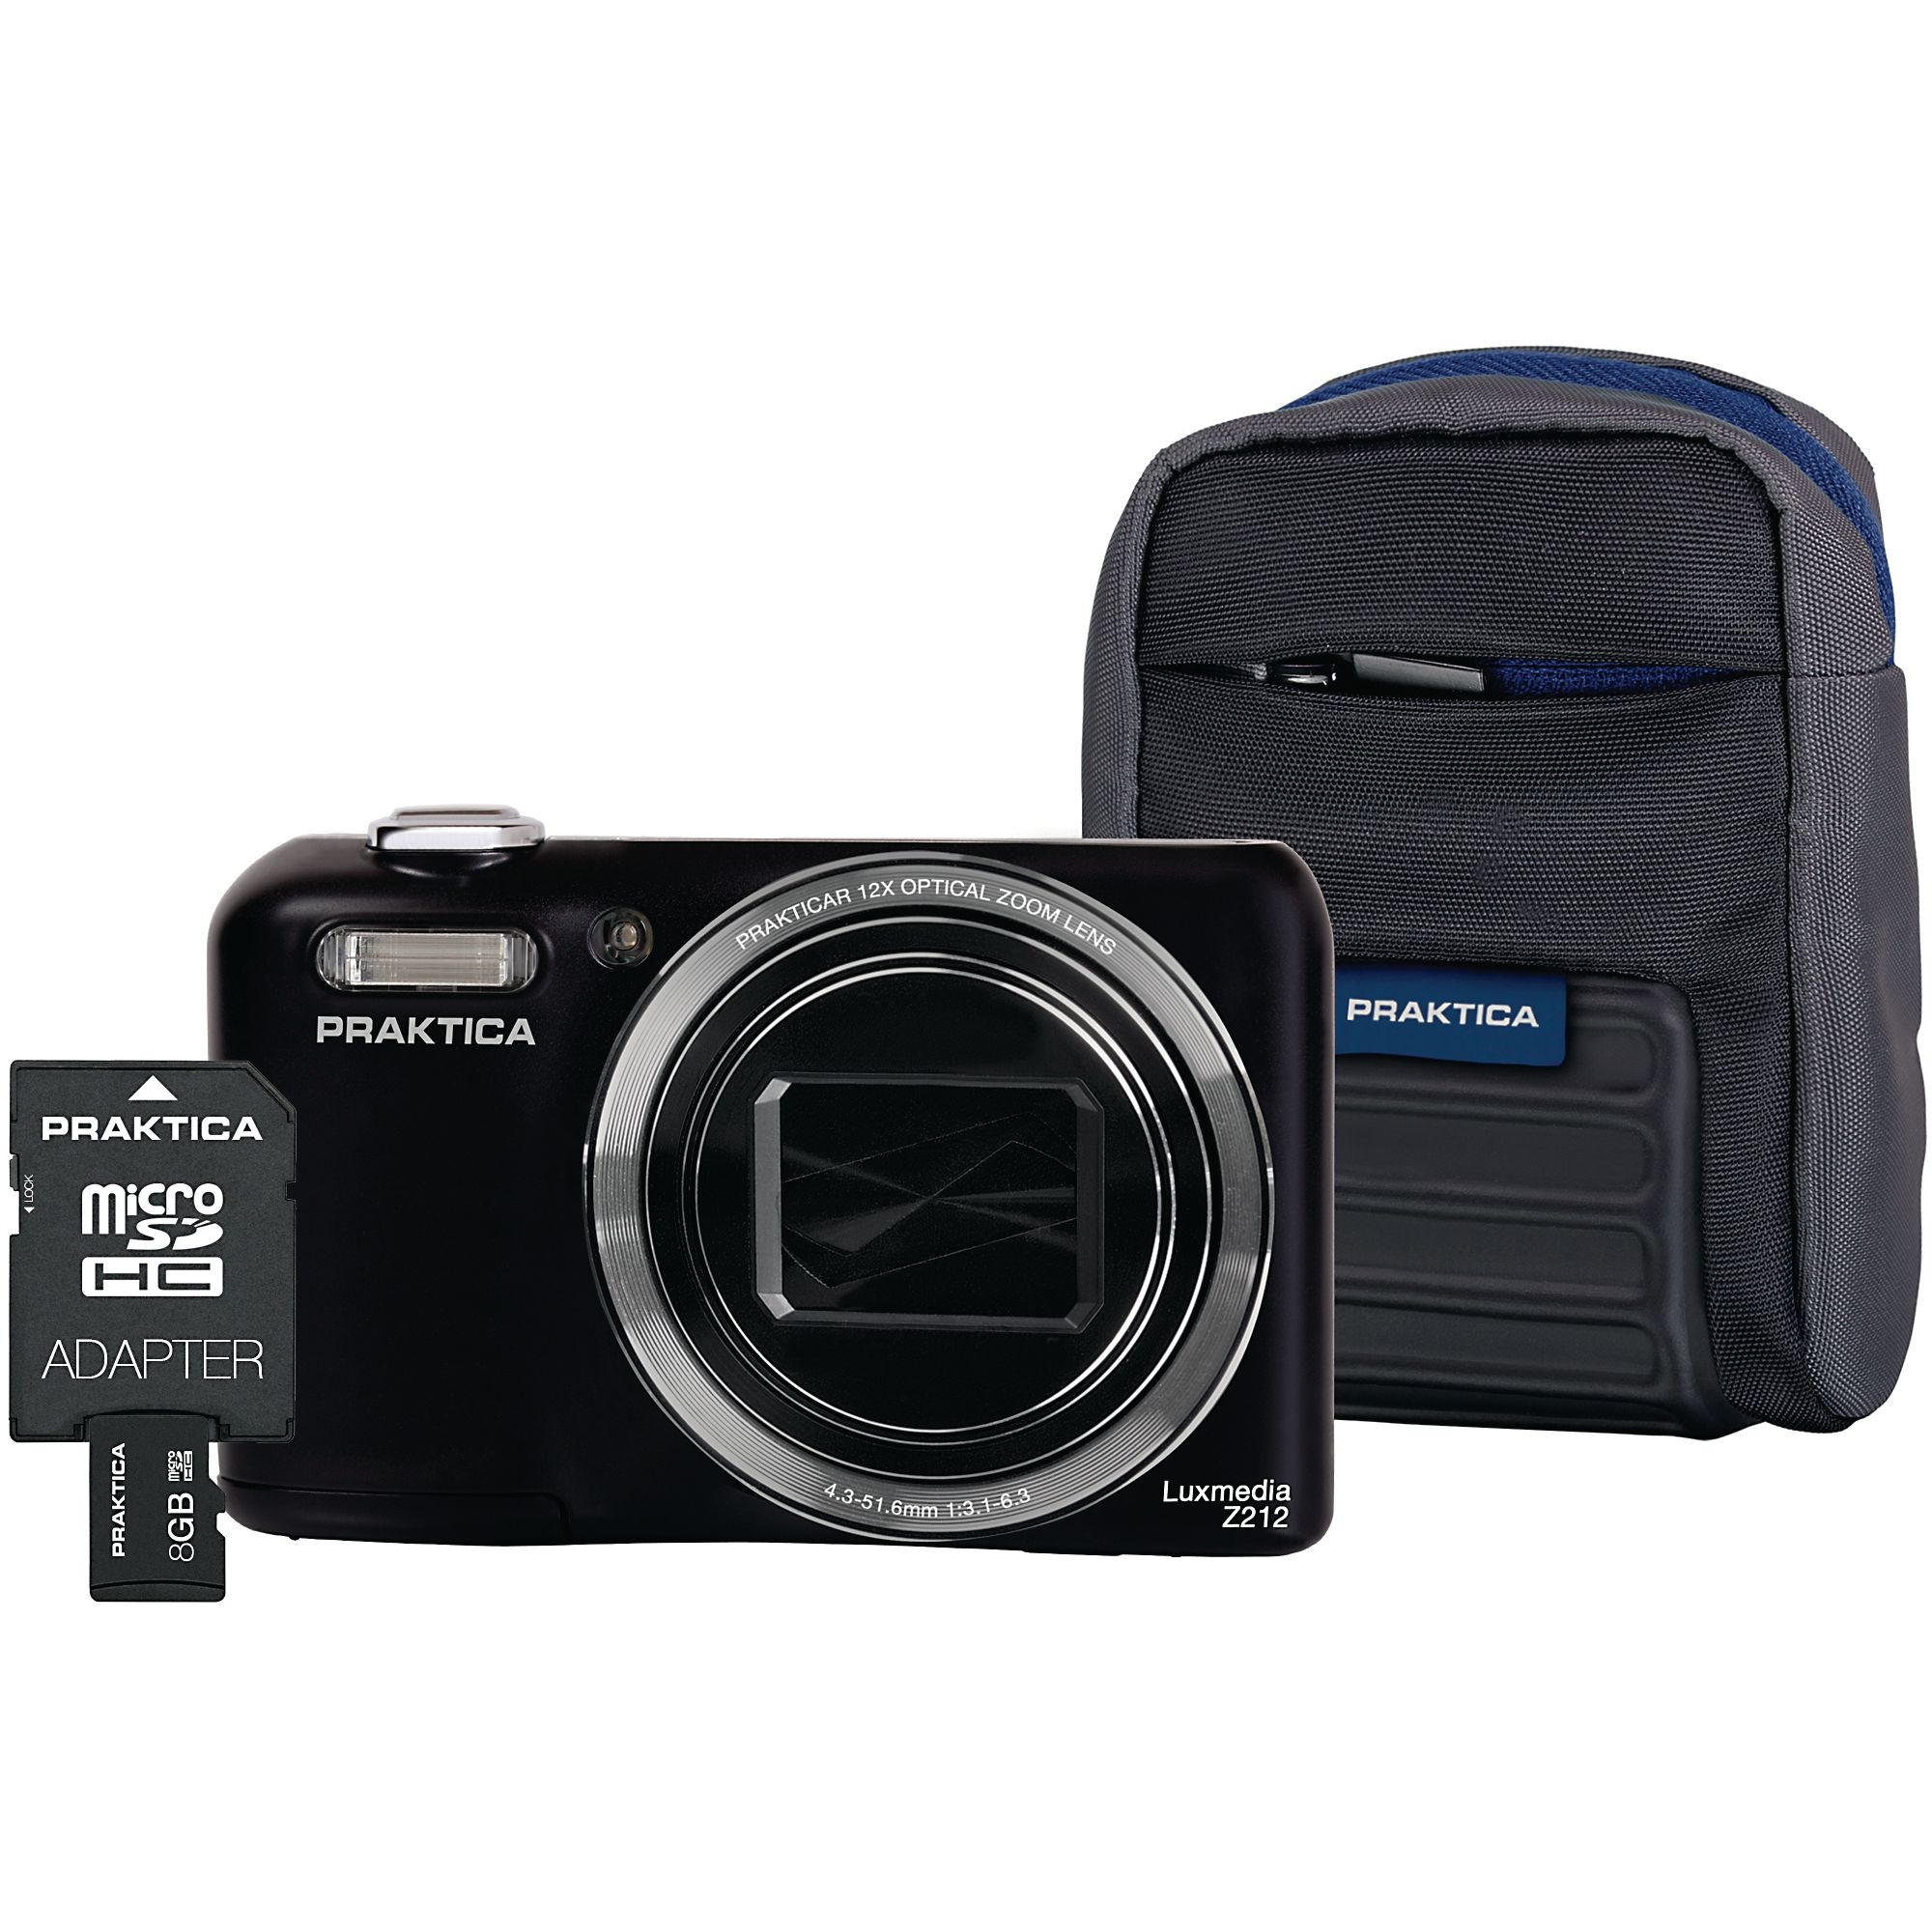 Praktica Luxmedia Z212 Camera Kit - Black